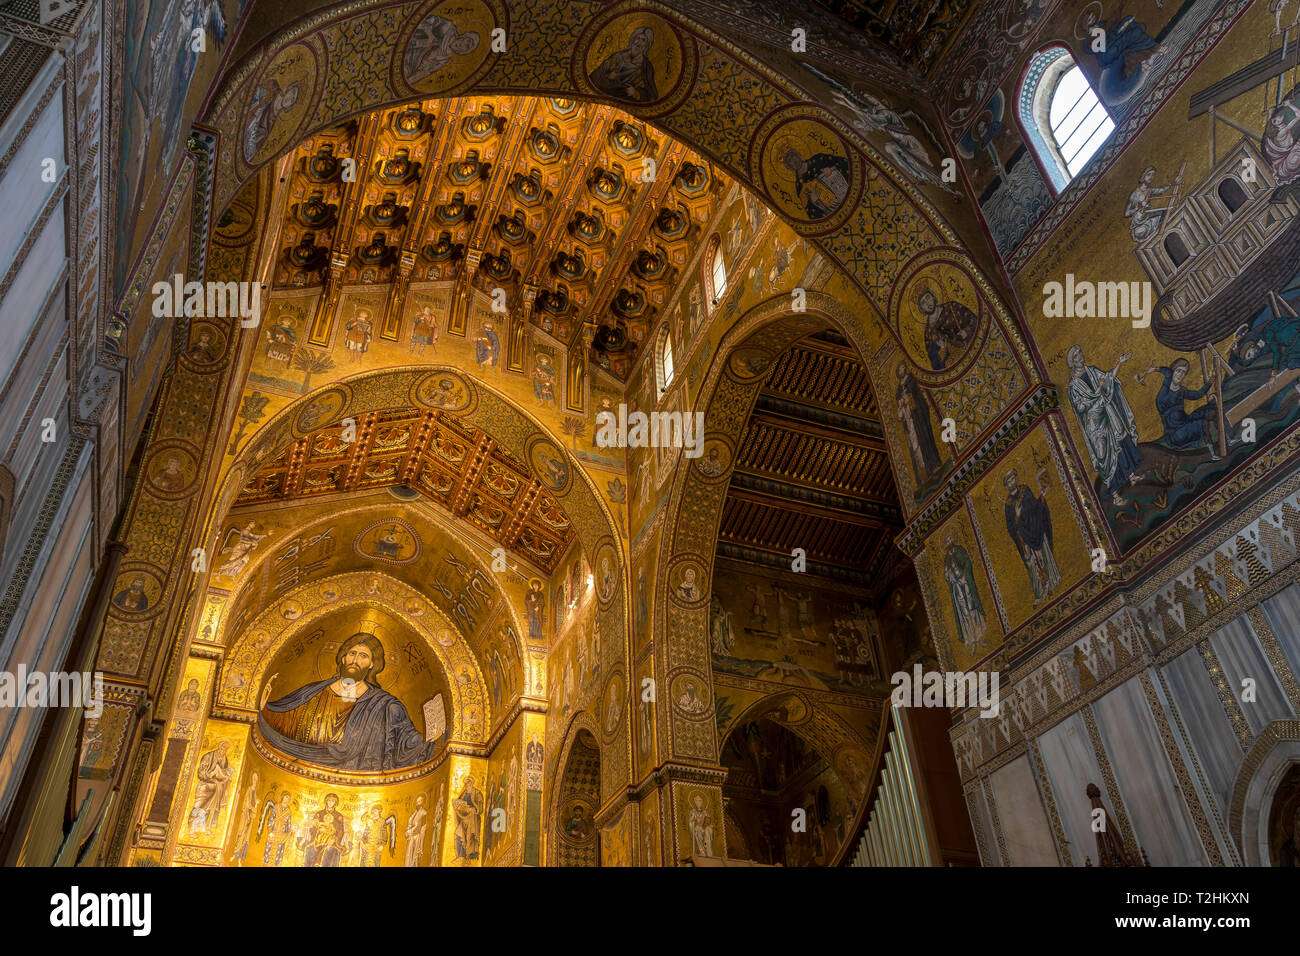 Innenraum der Kathedrale von Monreale, Cefalù, Palermo, Sizilien, Italien, Europa Stockfoto